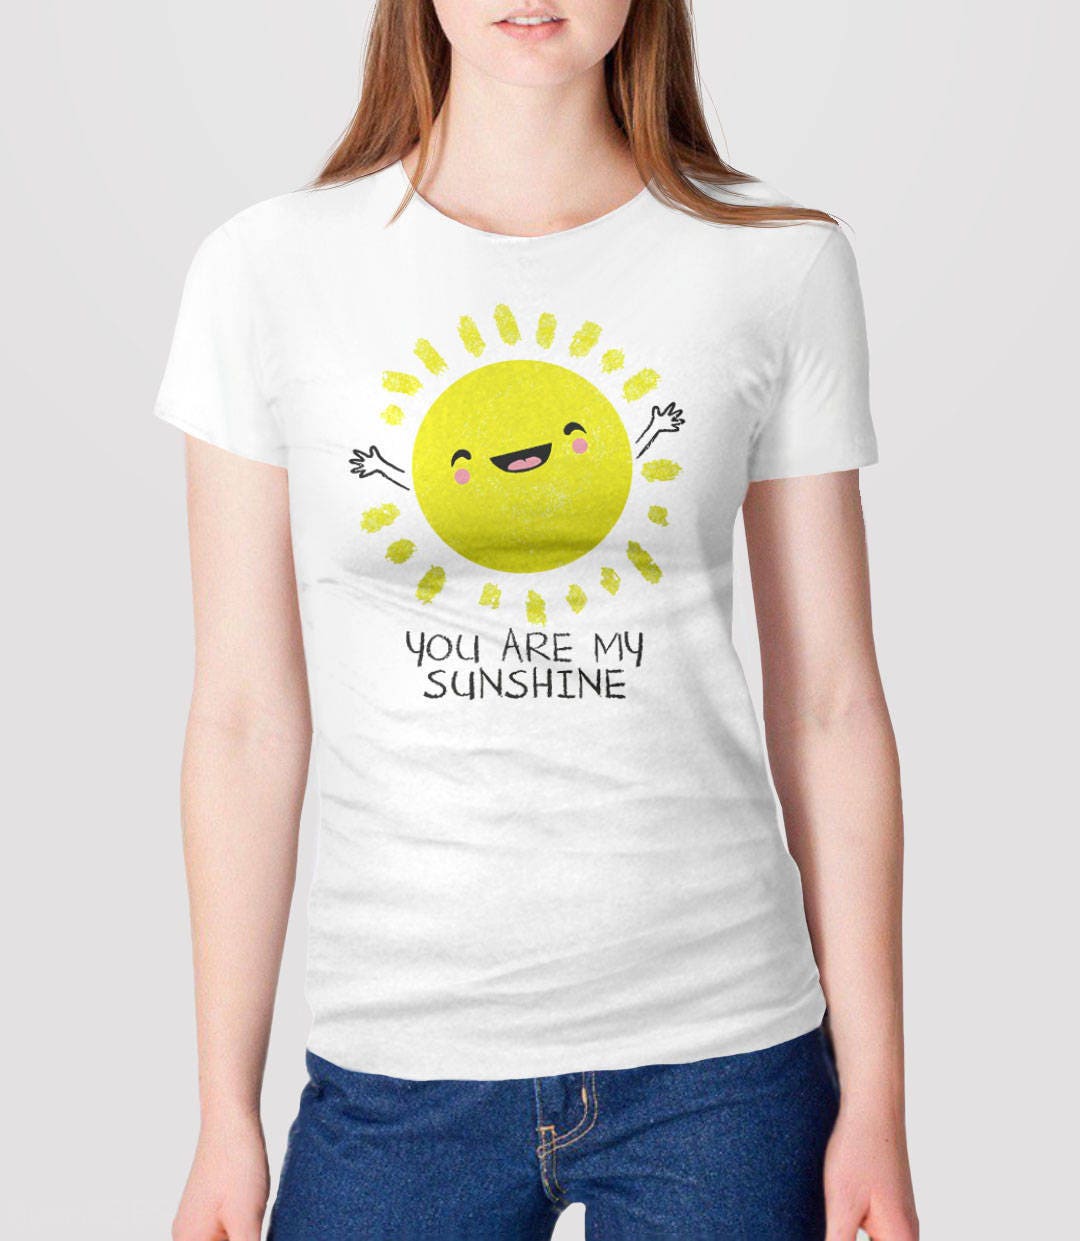 You Are My Sunshine Shirt Cute T Shirt for Women Cute Shirt - Etsy